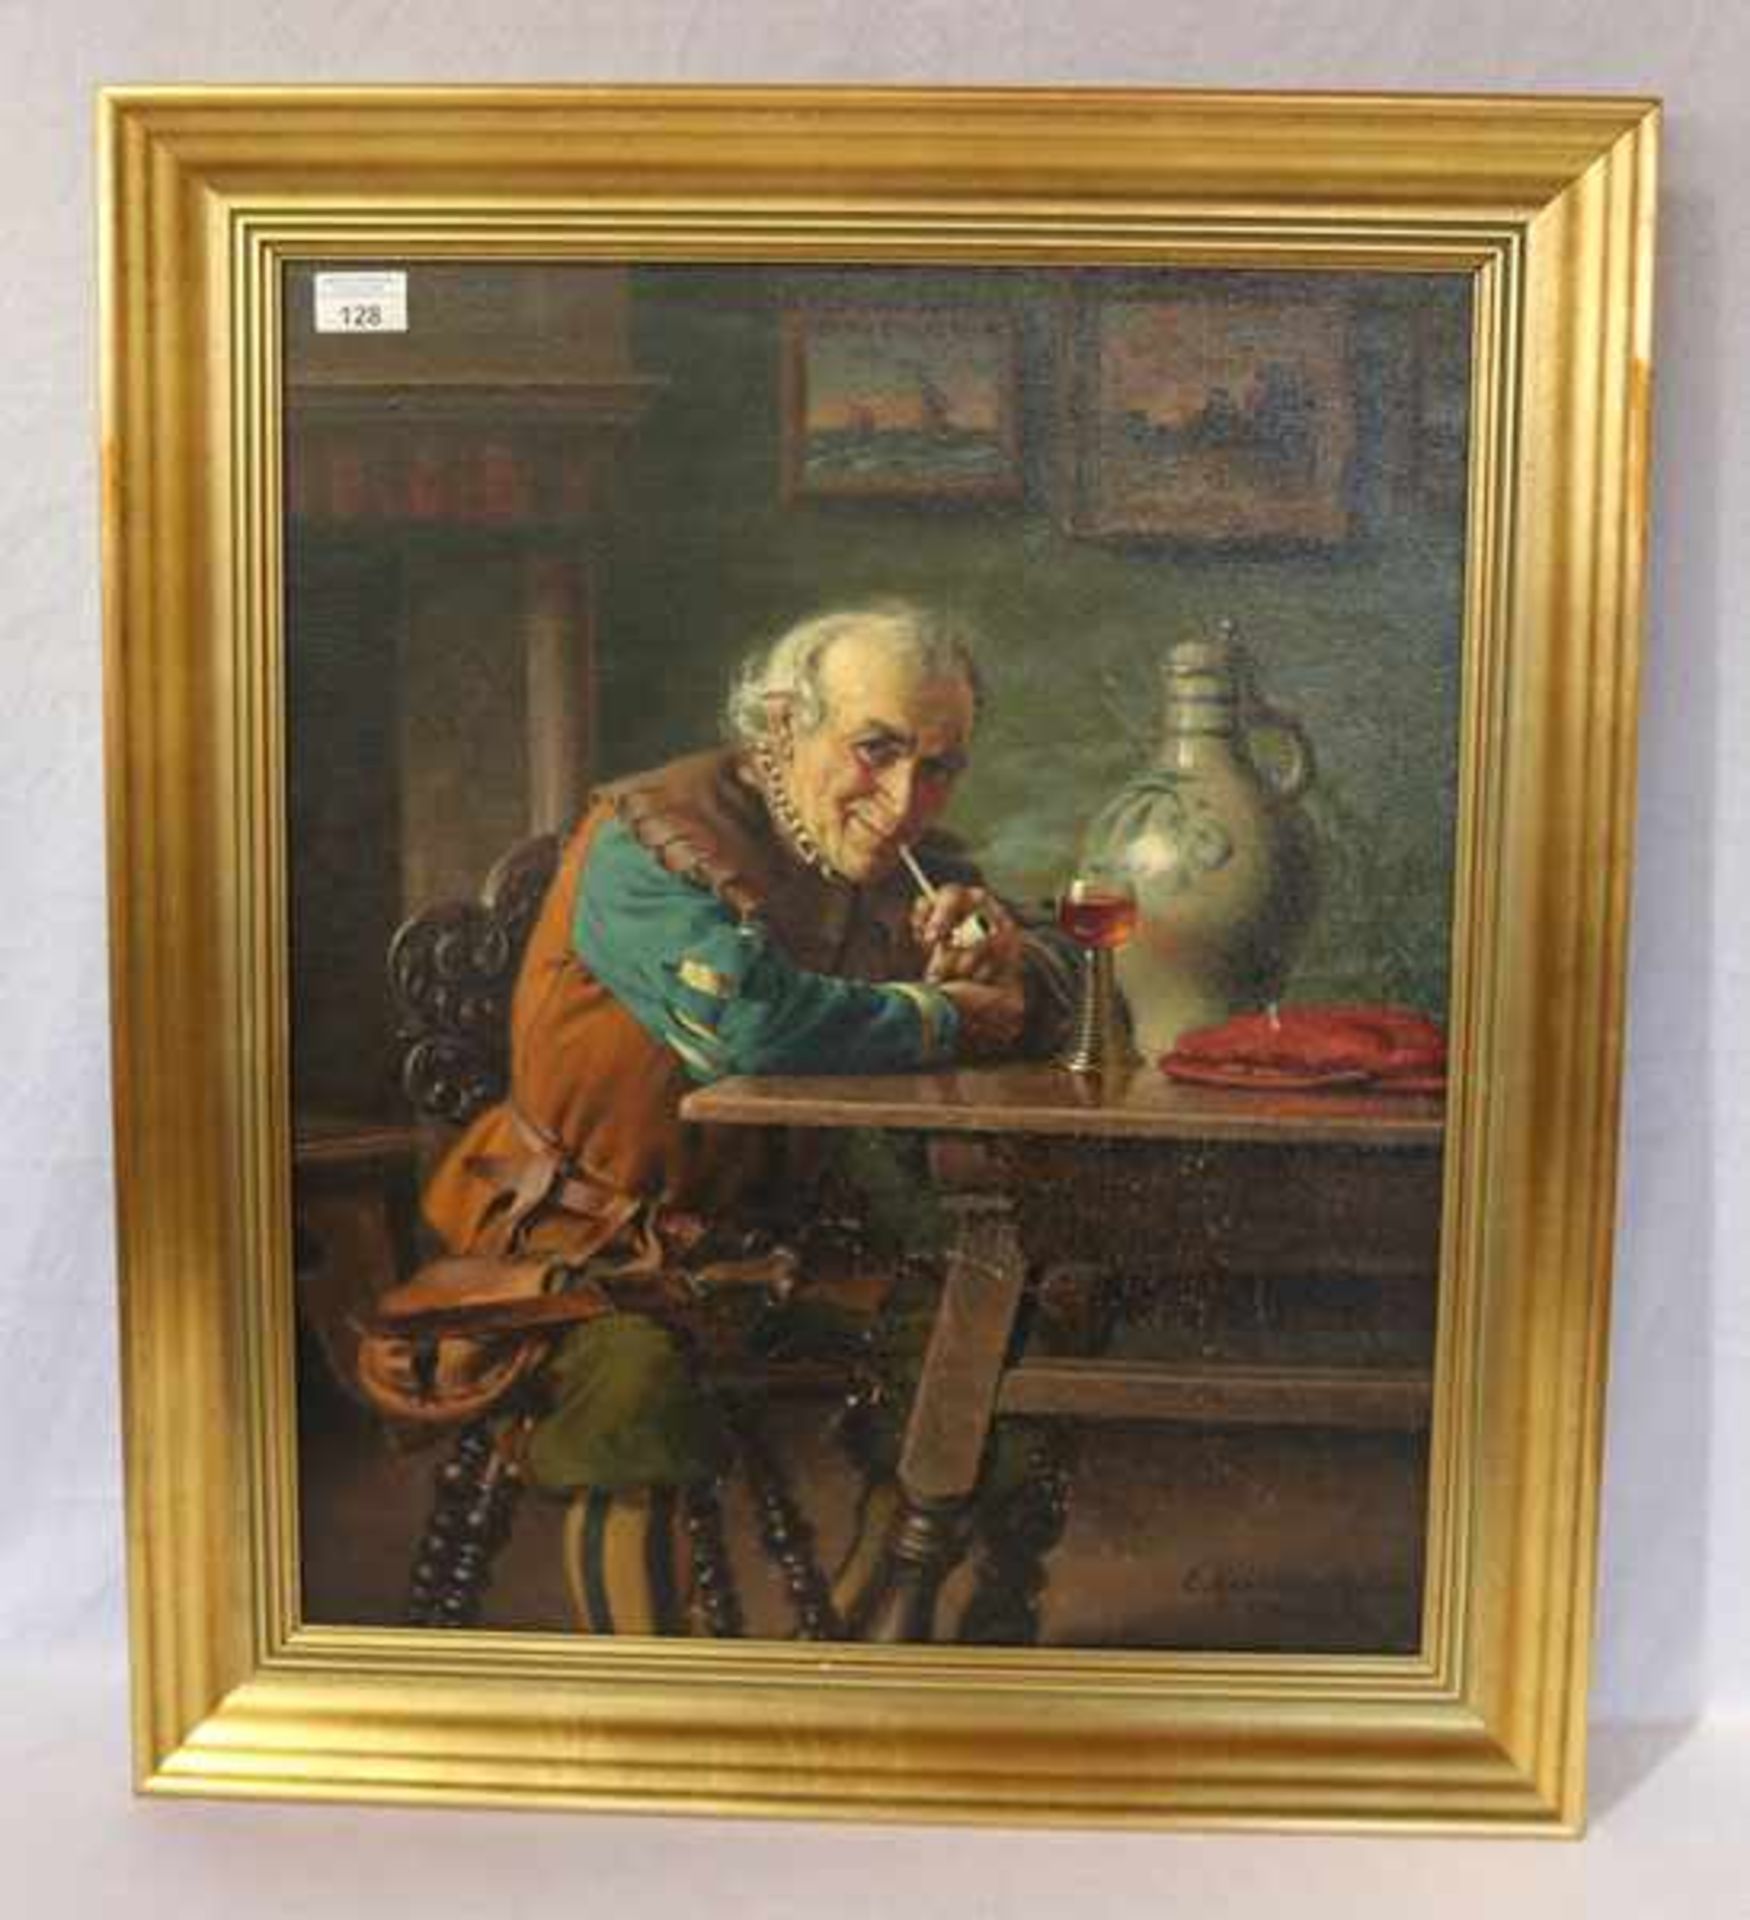 Gemälde ÖL/LW 'Bildnis eines Landsknechts beim Rauchen', signiert E. (Emil) Kuhlmann-Reher, München,